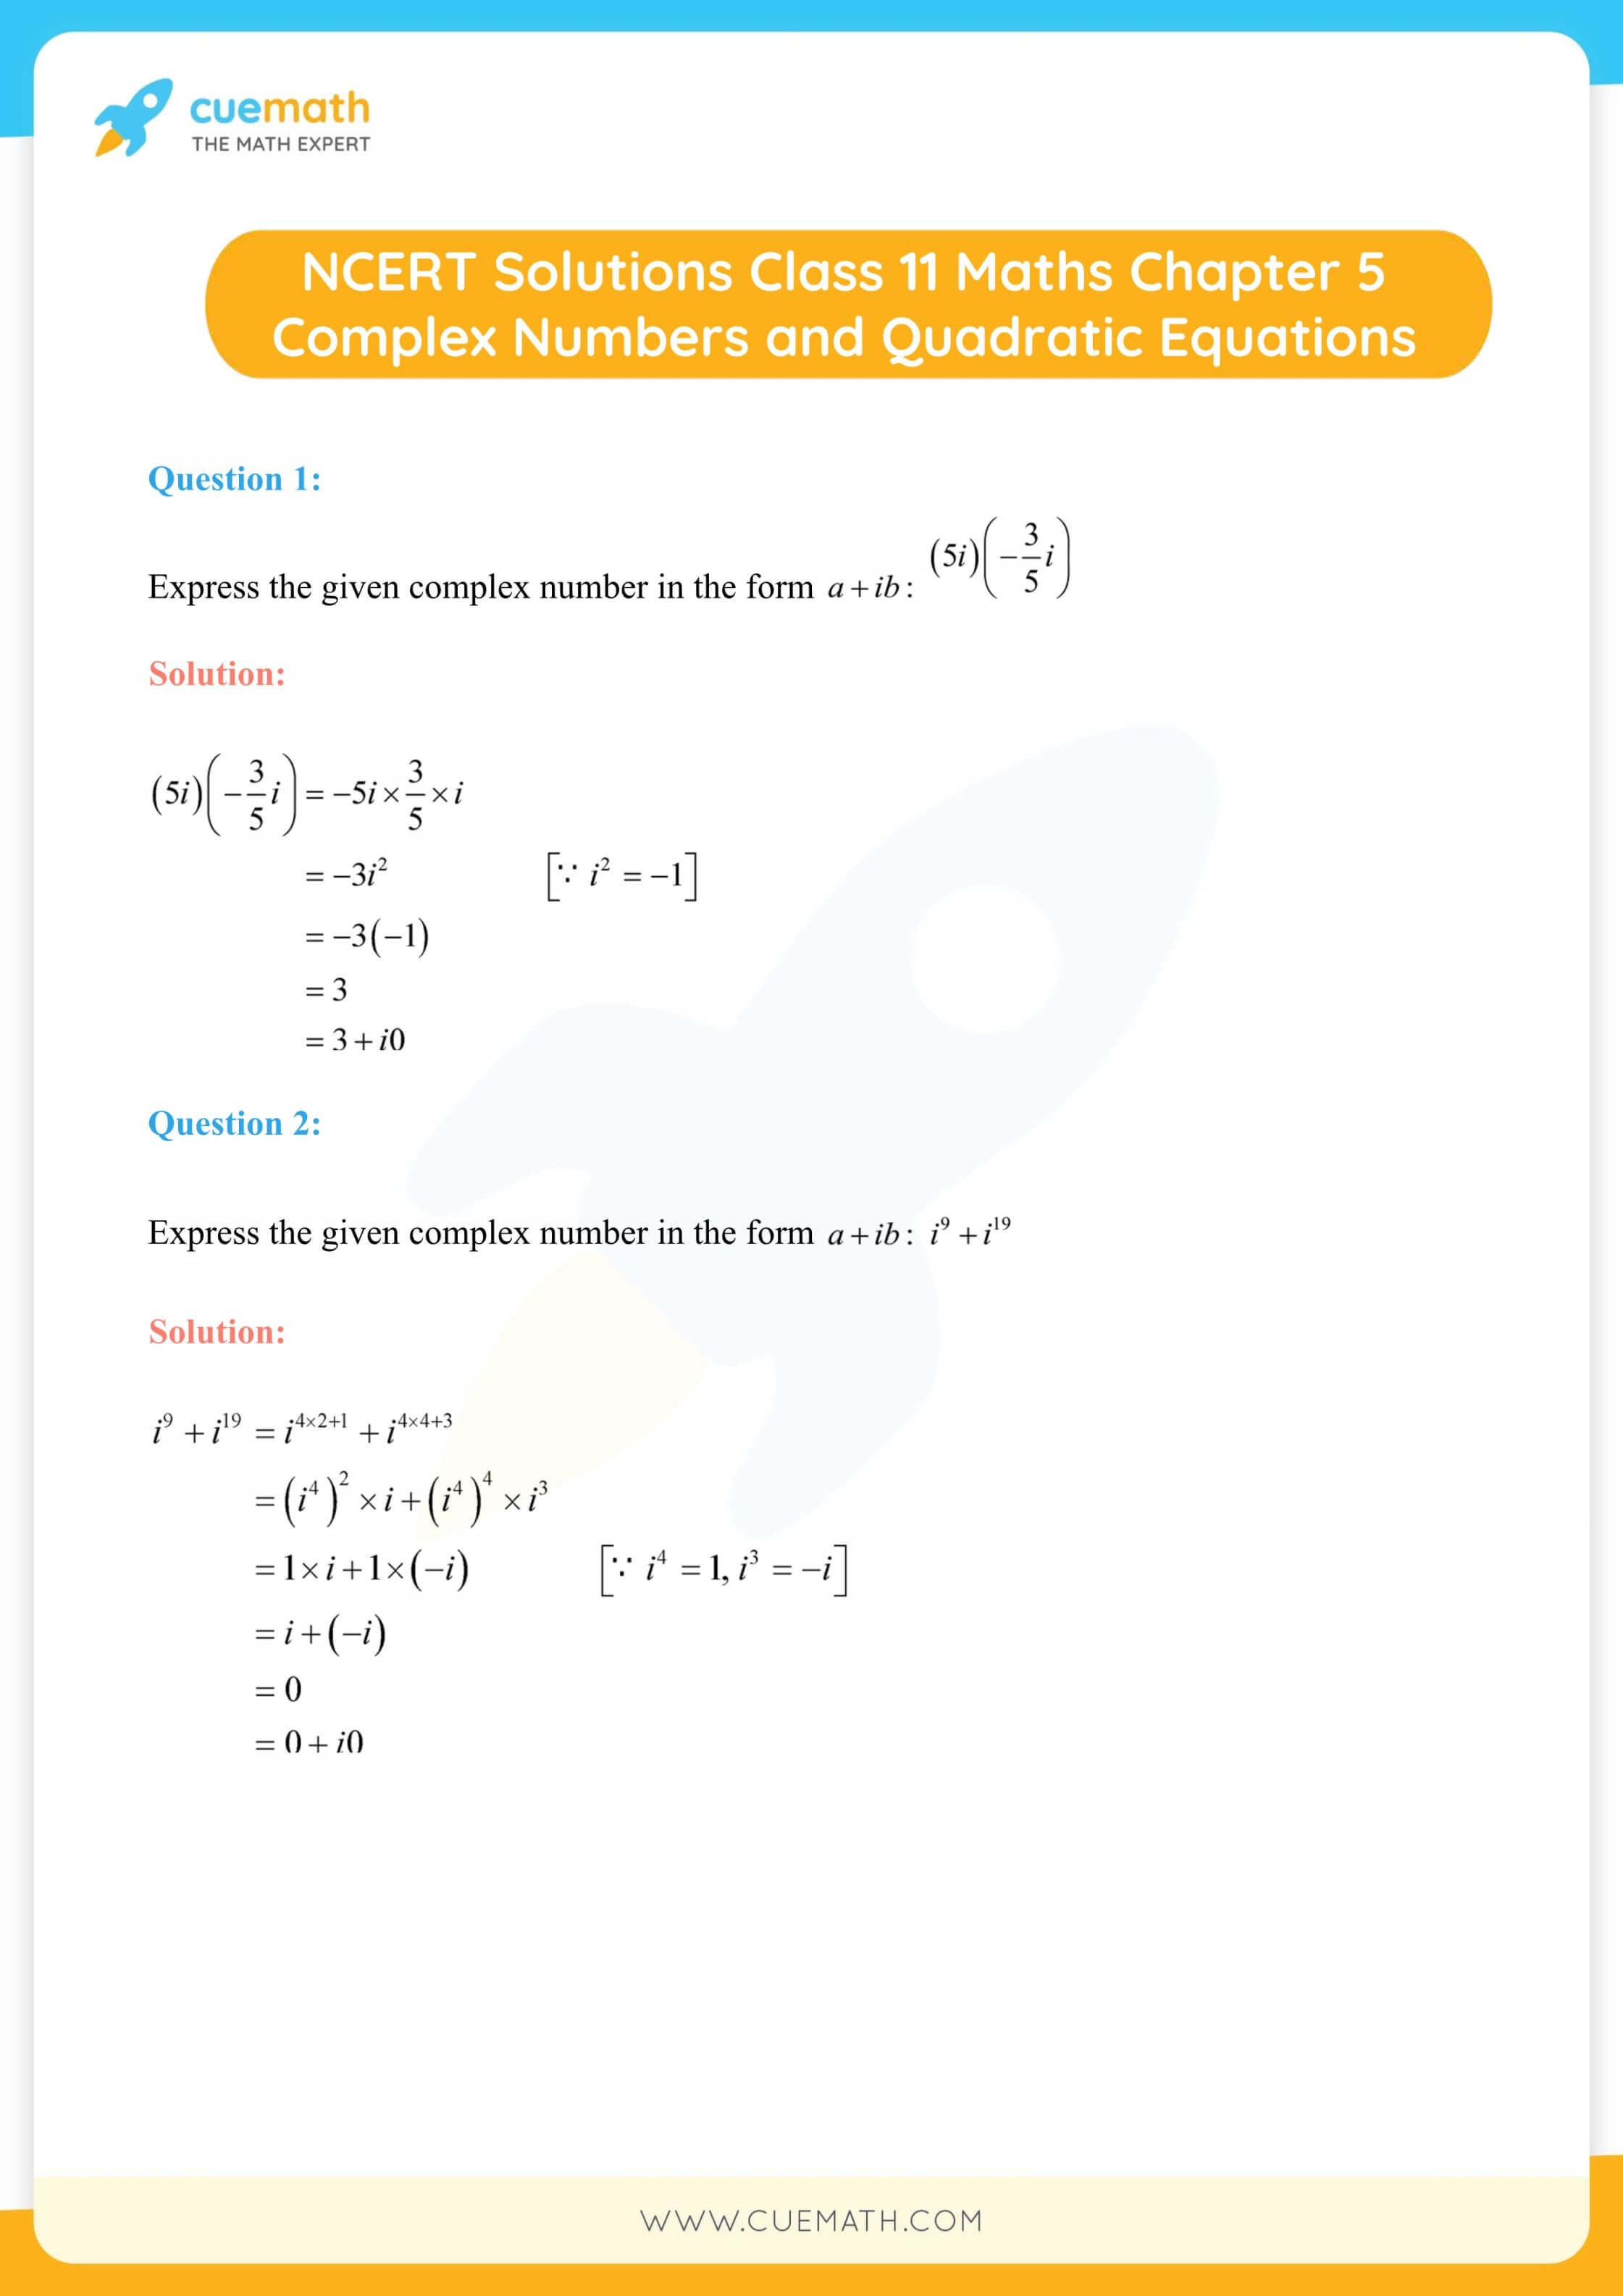 NCERT Solutions Class 11 Maths Chapter 5 1